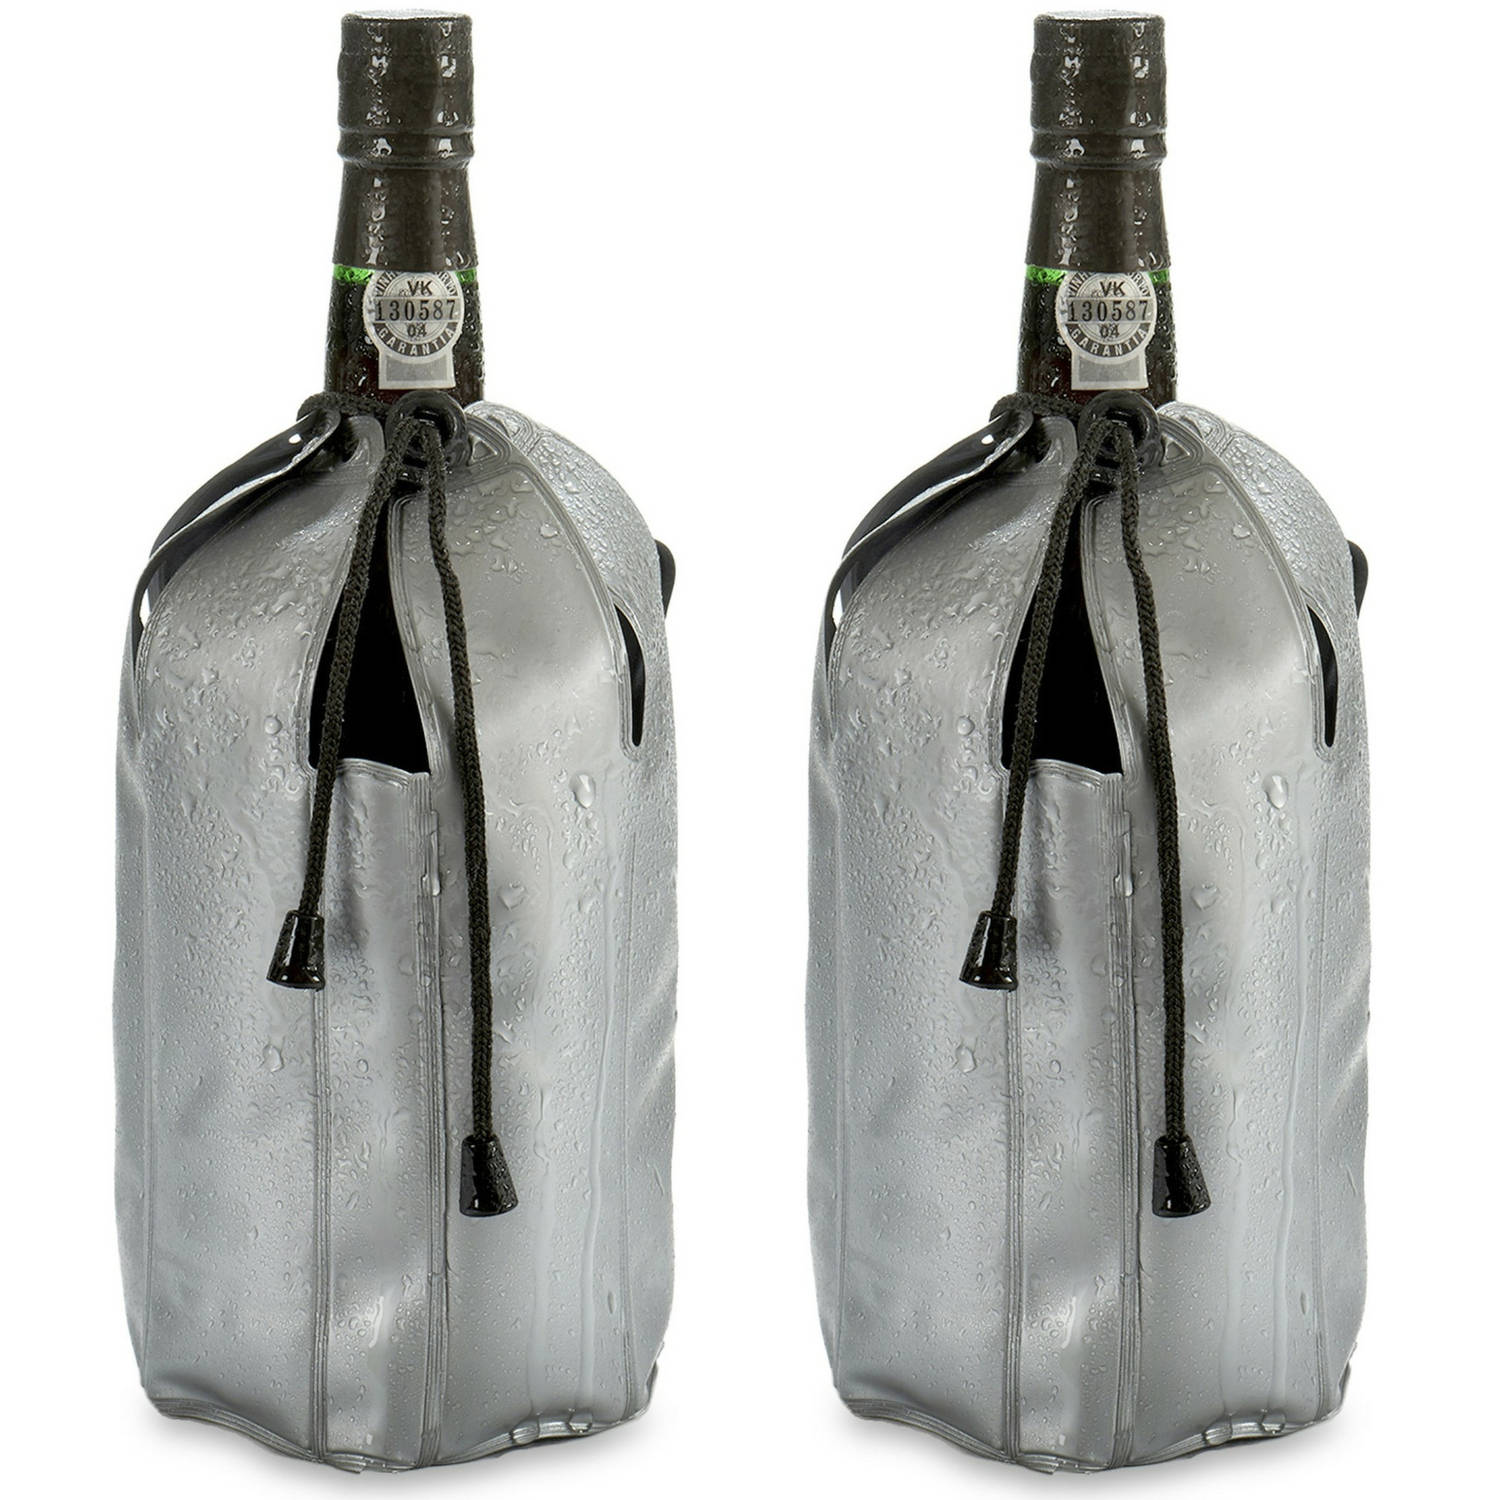 Wijnkoeler-flessenkoeler-koelhoud hoesje 2x voor flessen wijn-water-champagne 25 cm Koelelementen